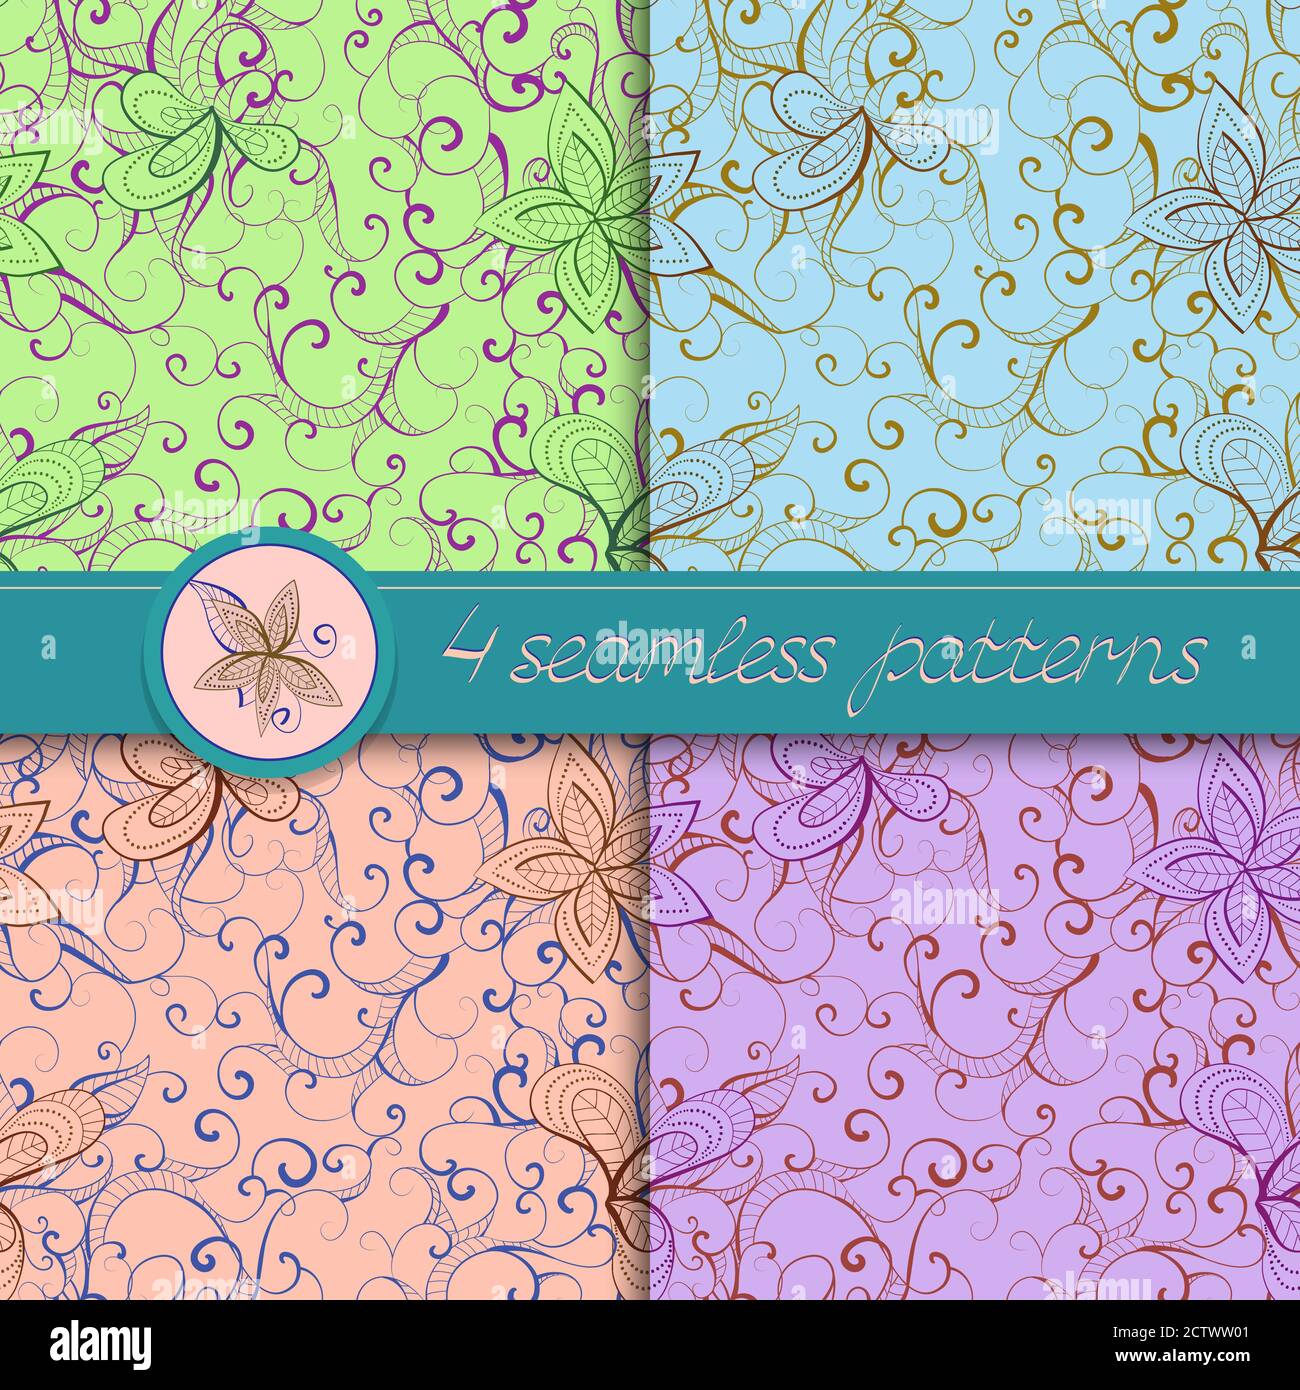 Serie vettoriale di motivi senza cuciture con elementi floreali. Collezione di motivi in verde, blu, viola e rosa chiaro. Illustrazione Vettoriale